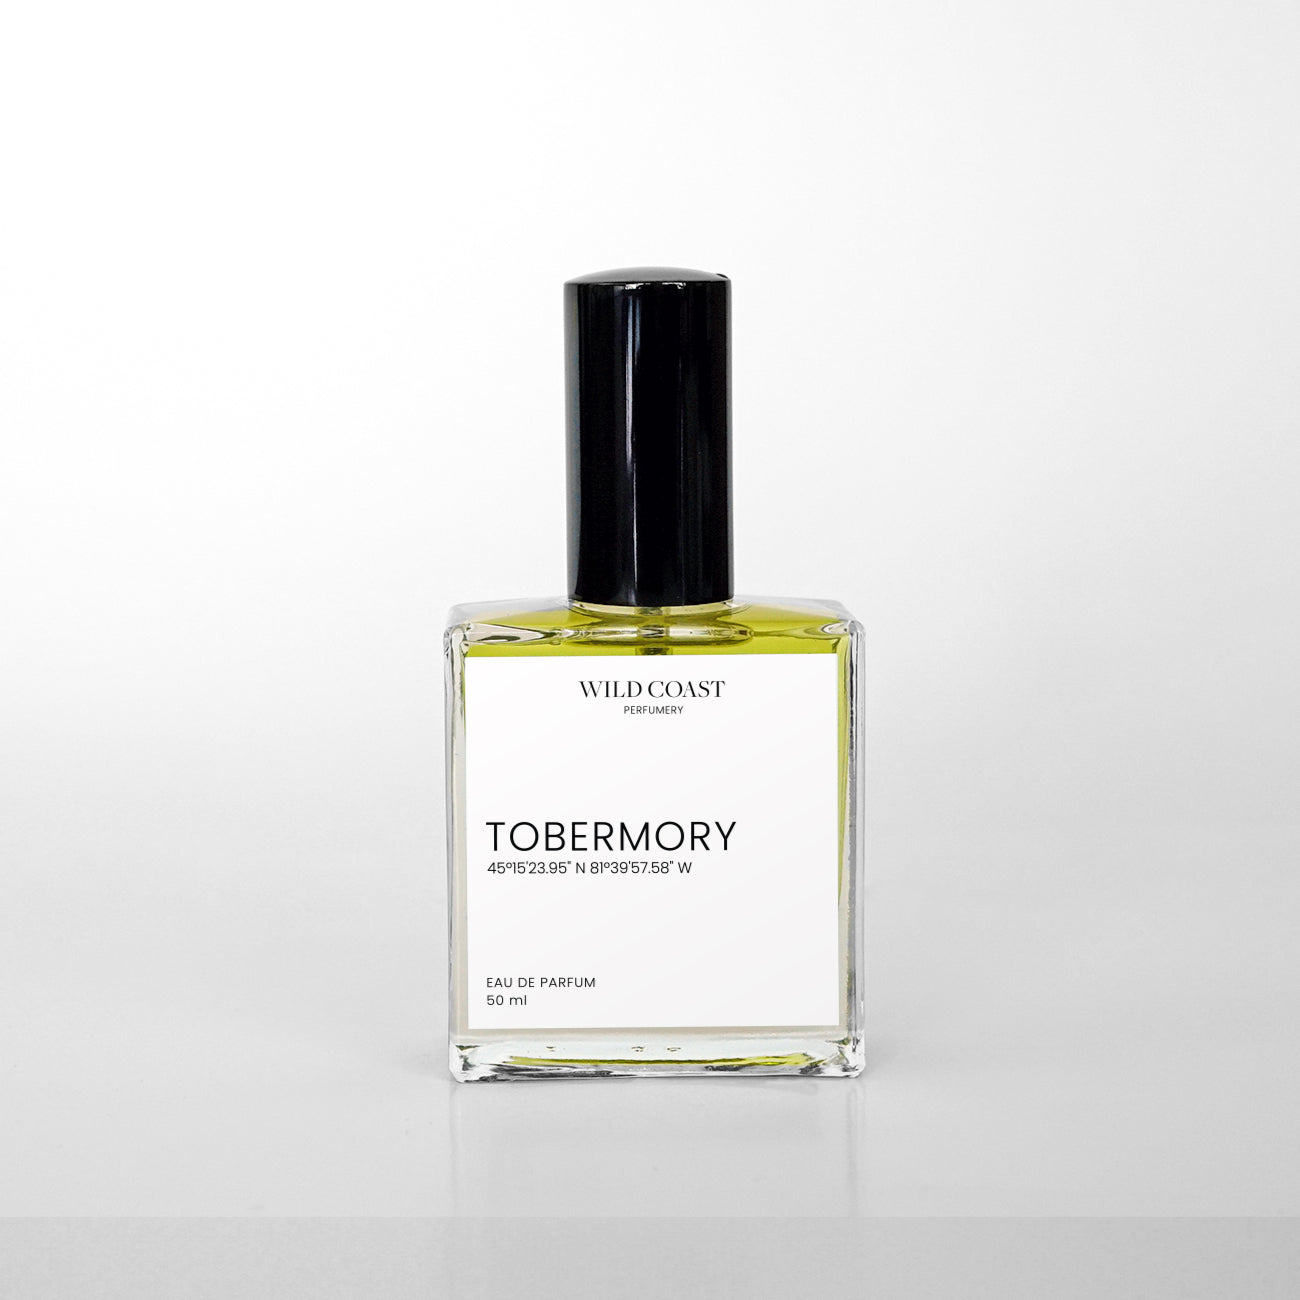 Tobermory eau de parfum